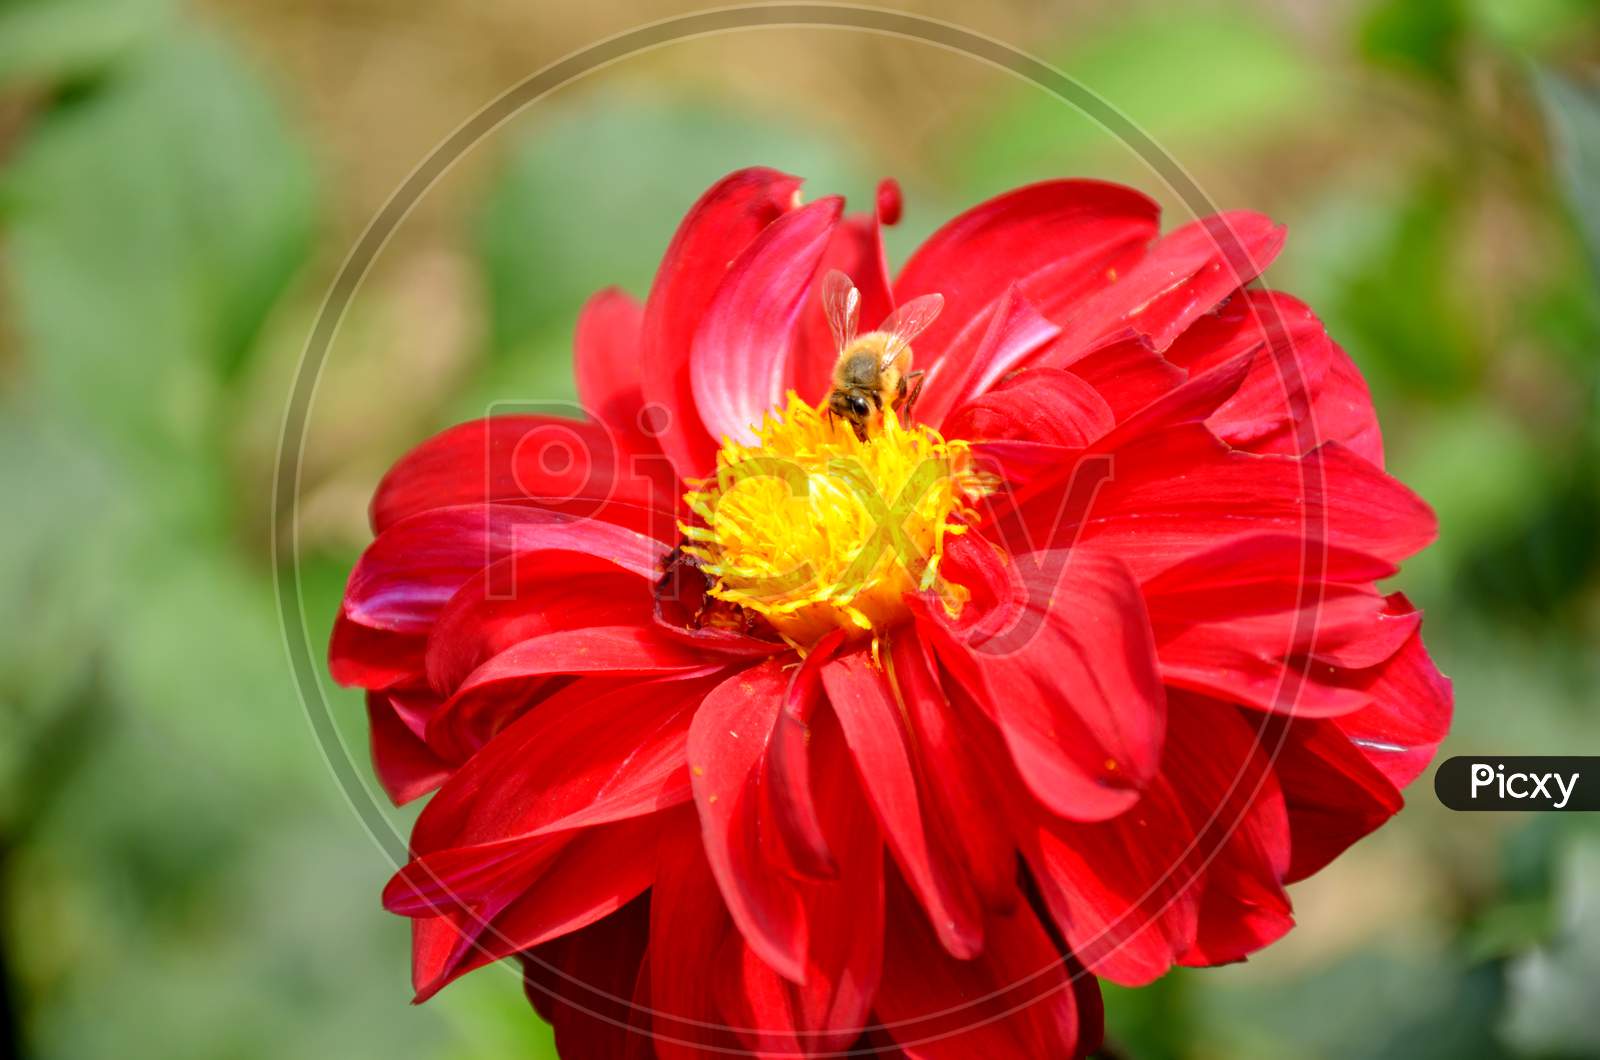 red dahlia flower in side honeybee.